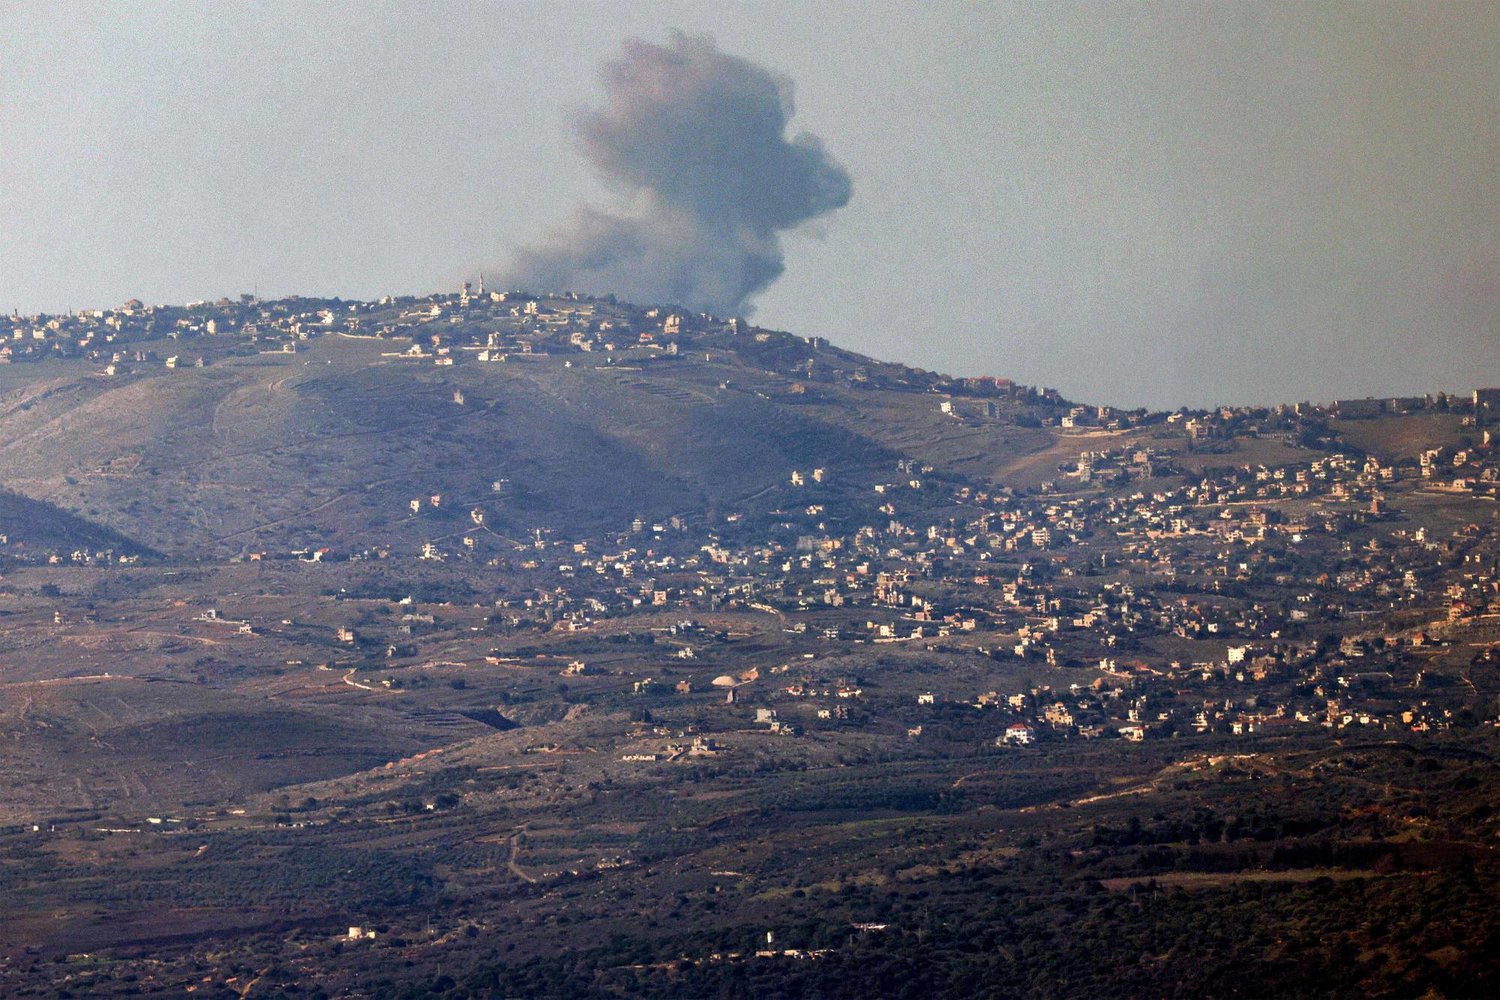  غارات جوية إسرائيلية تستهدف بلدات جنوب لبنان: هل تتصاعد التوترات؟ 